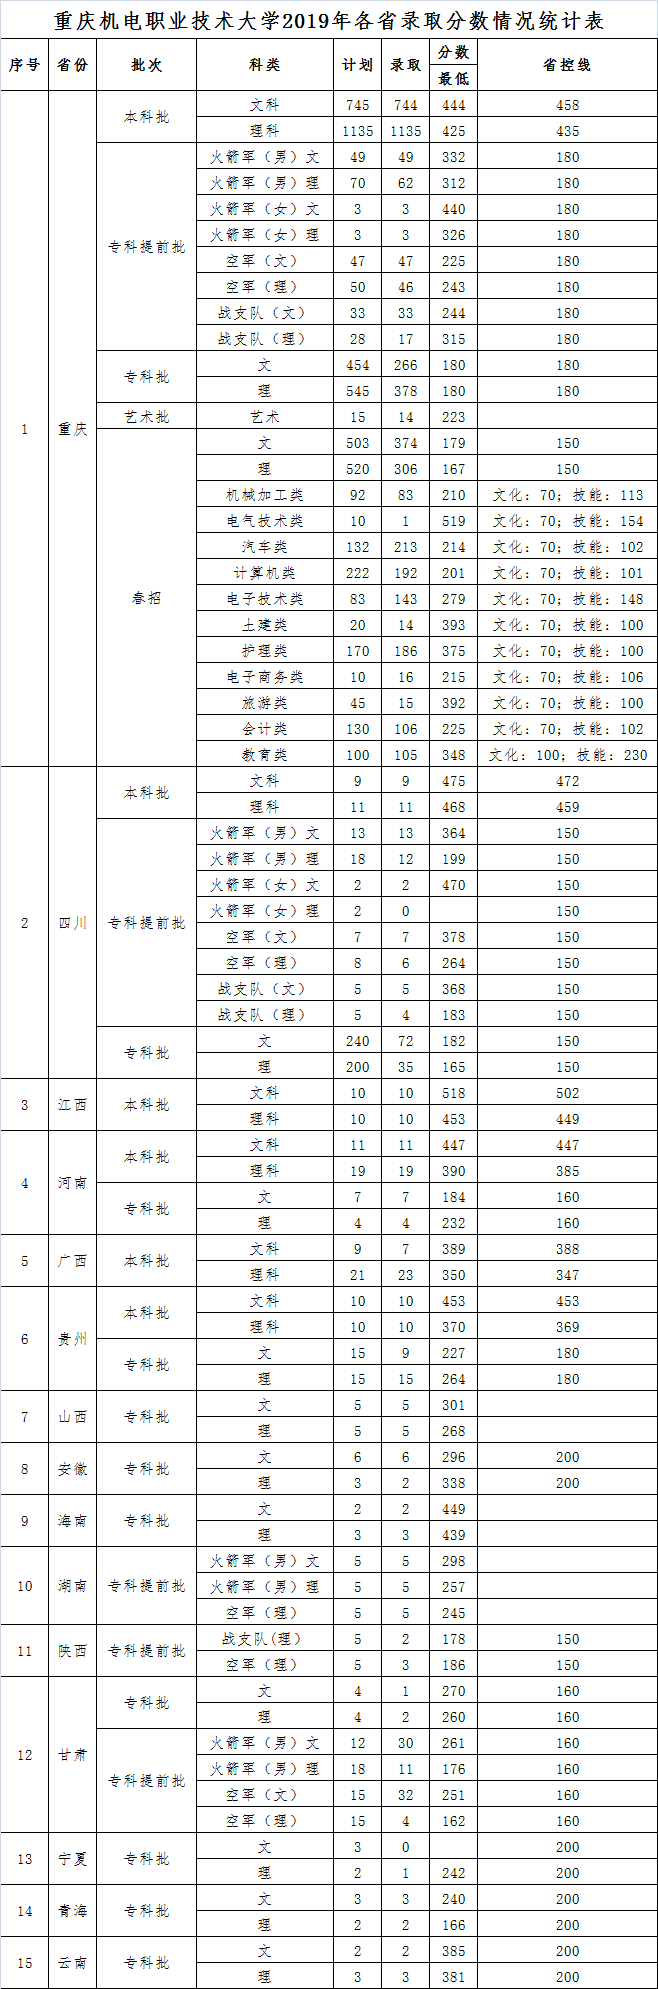 重庆机电职业技术大学2019年各省录取分数情况统计表